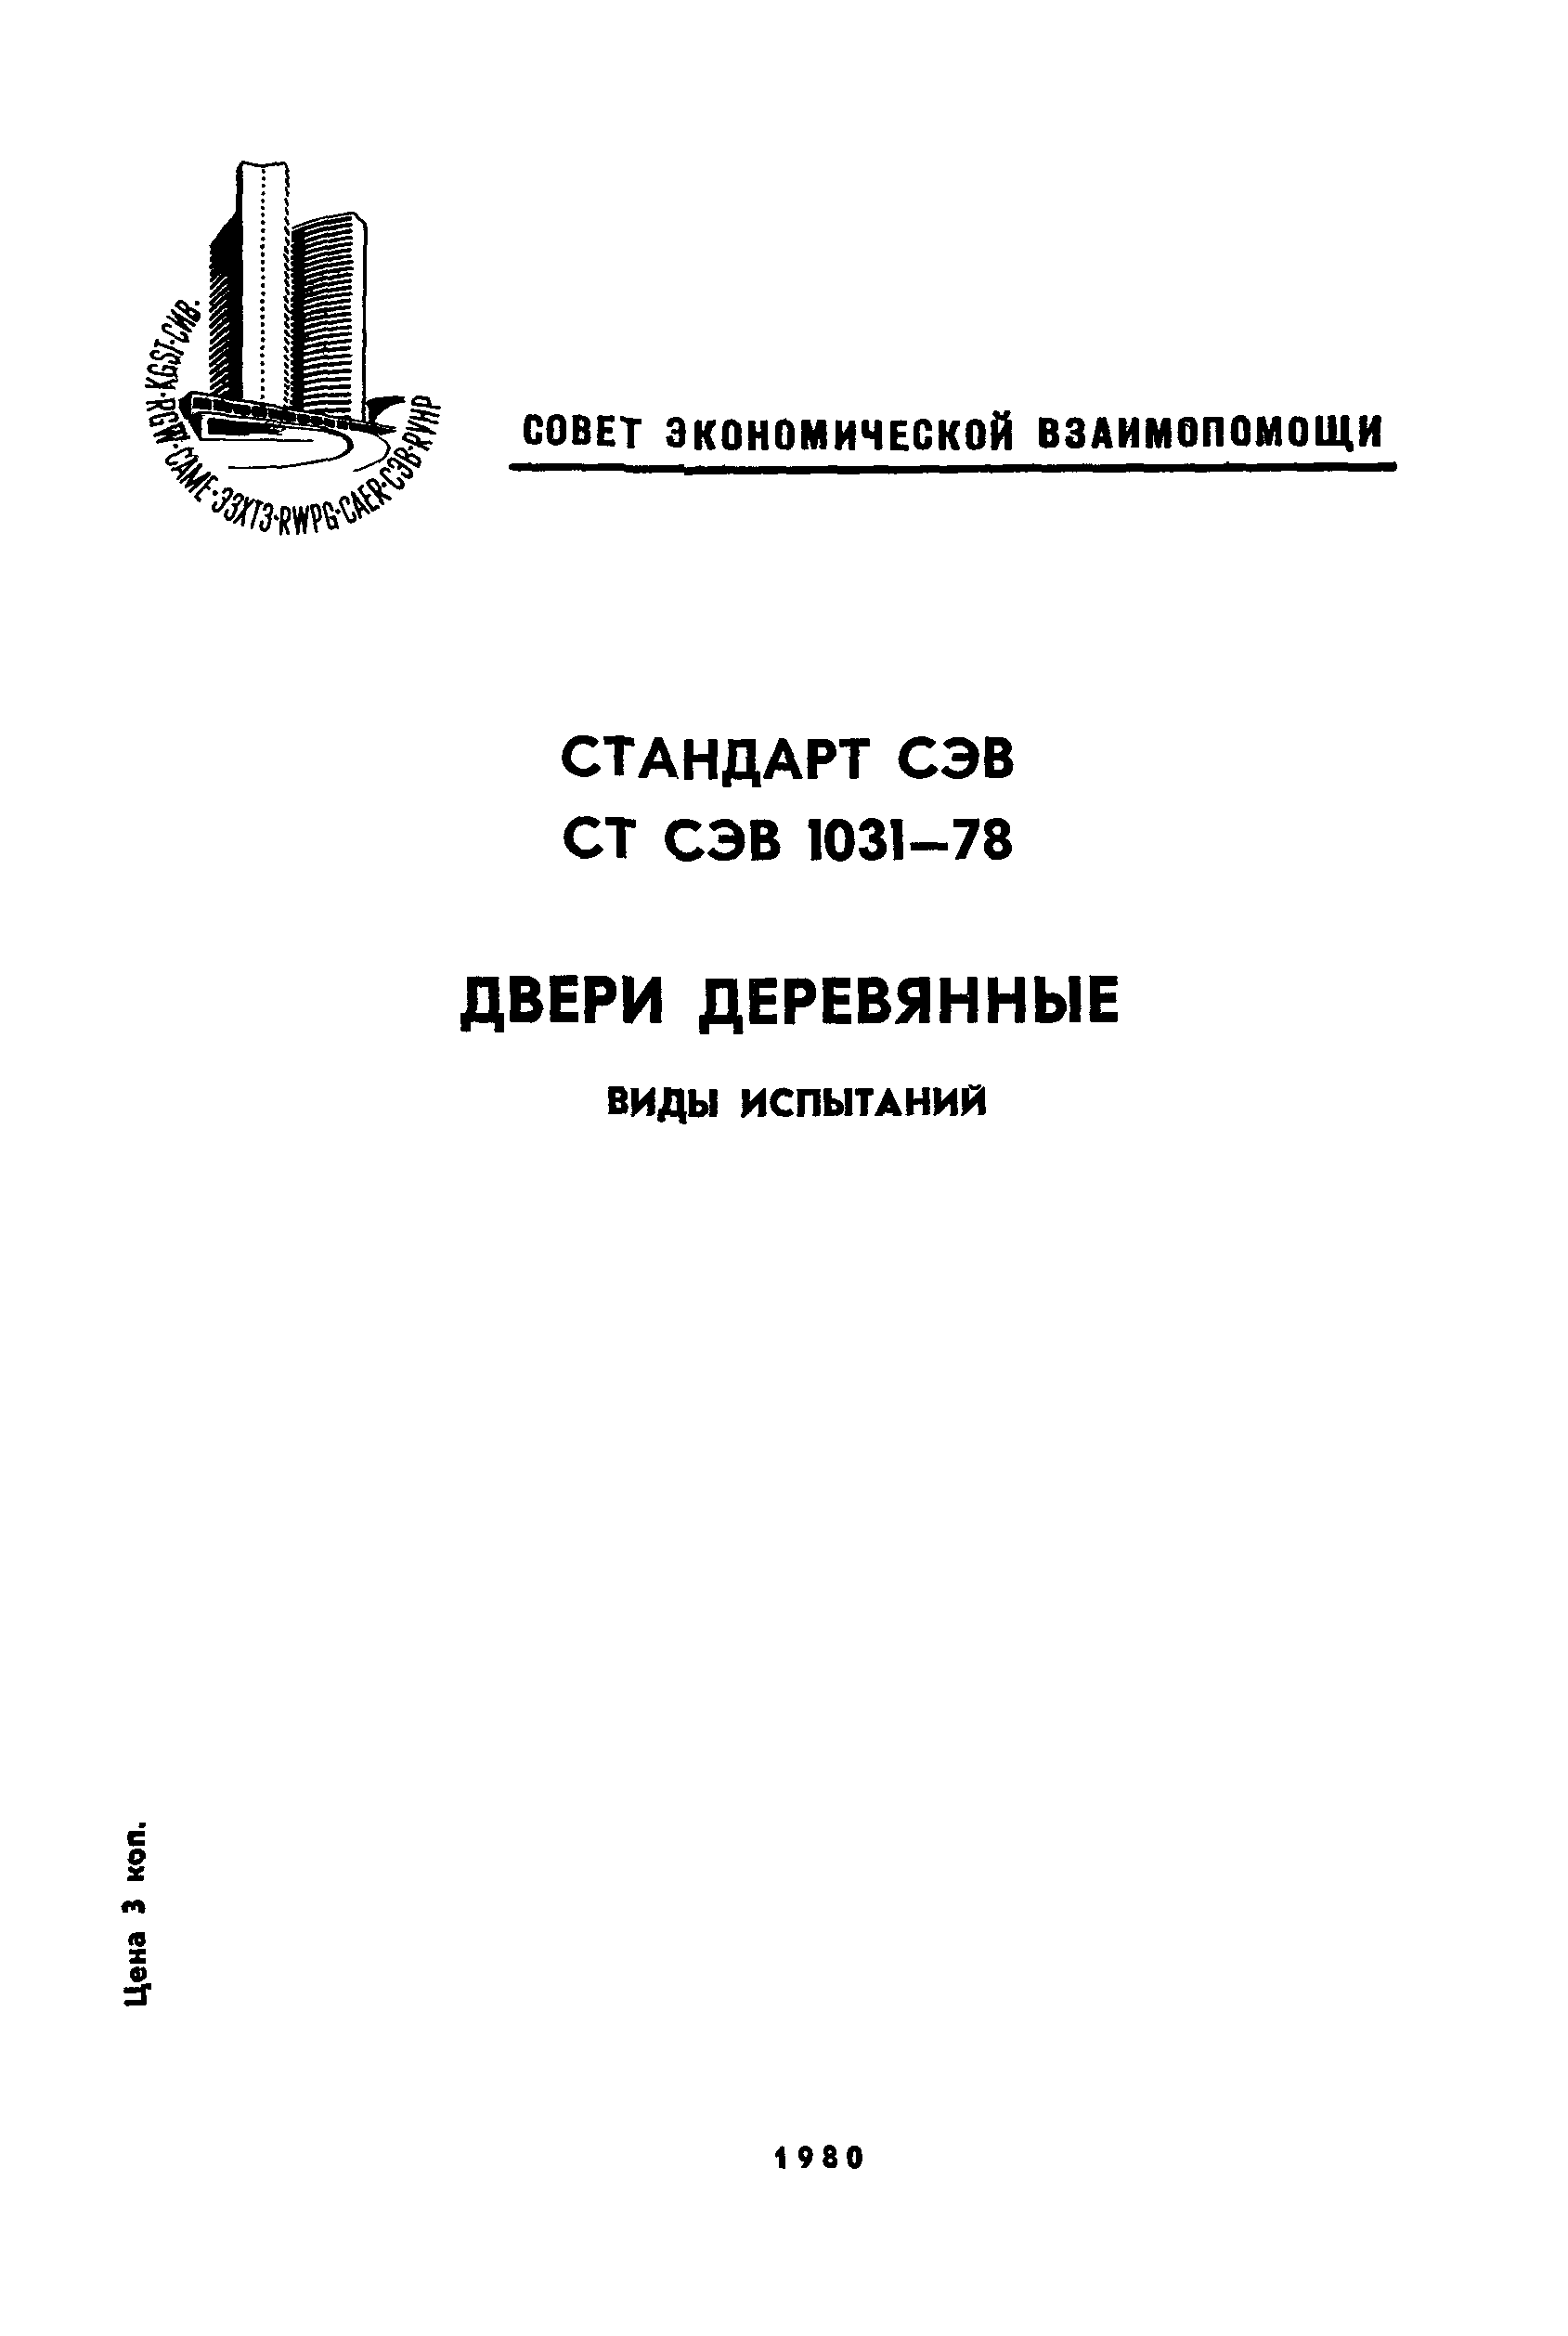 СТ СЭВ 1031-78